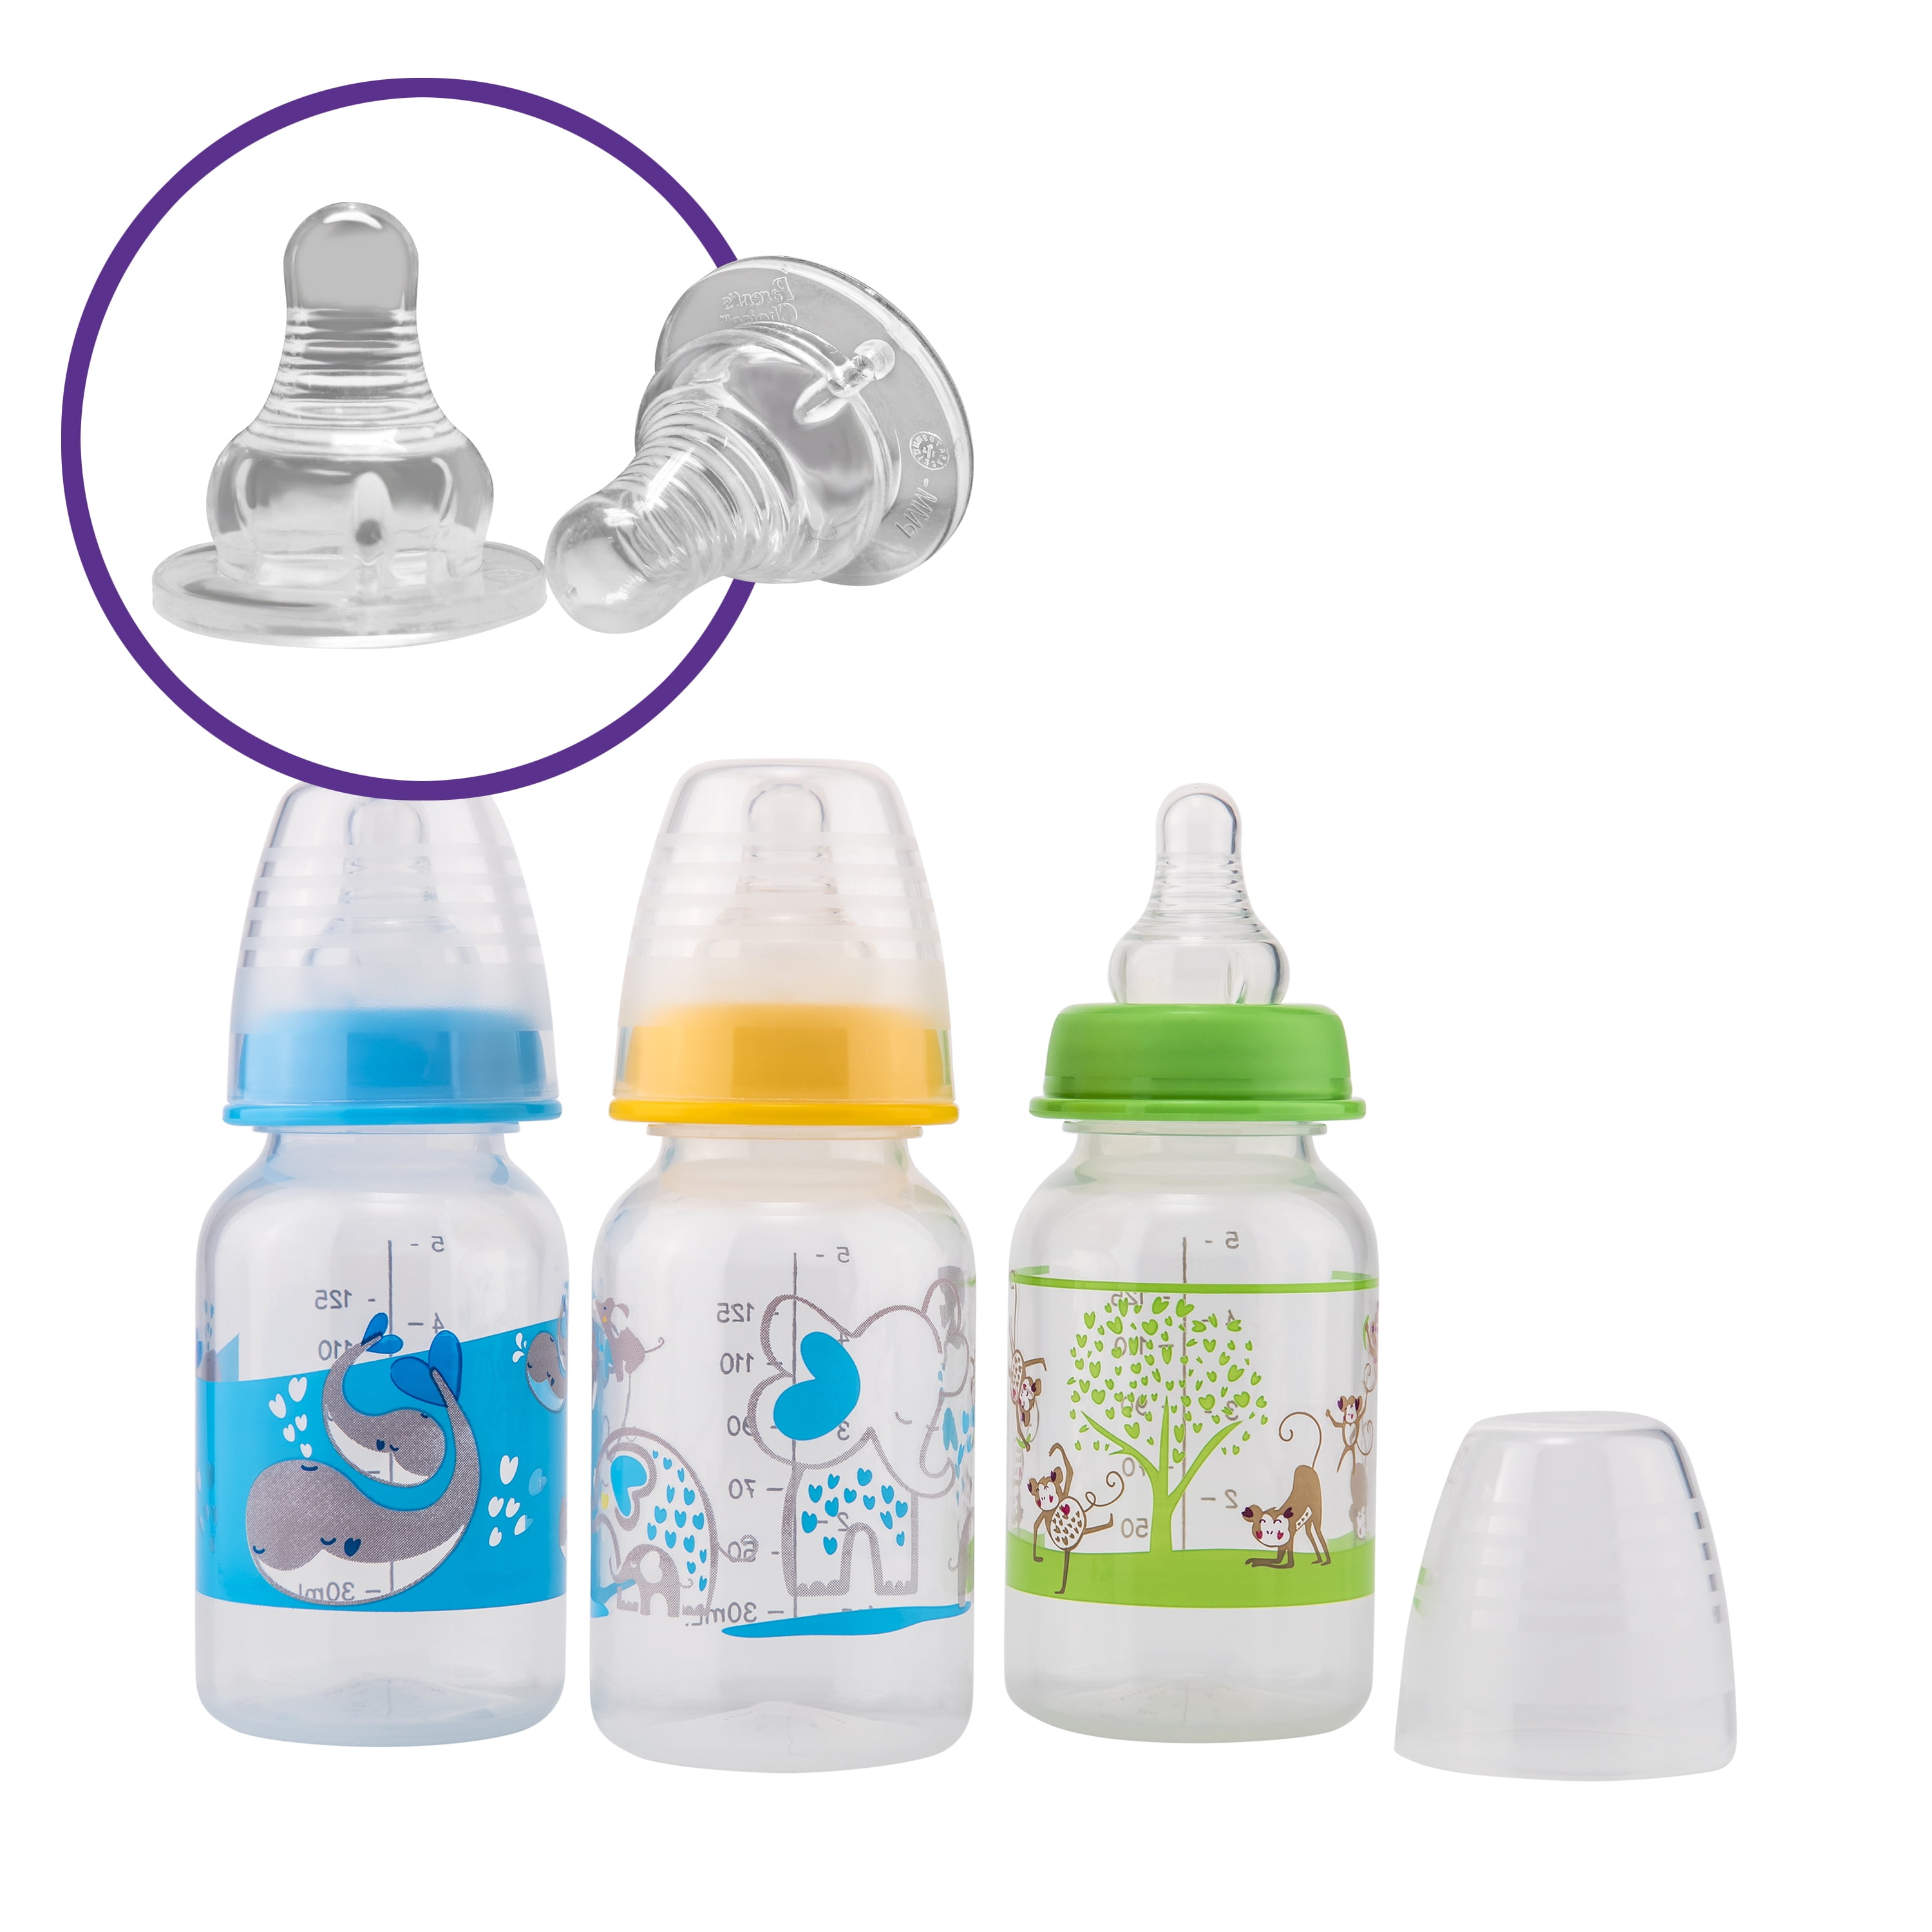 parents choice infant water